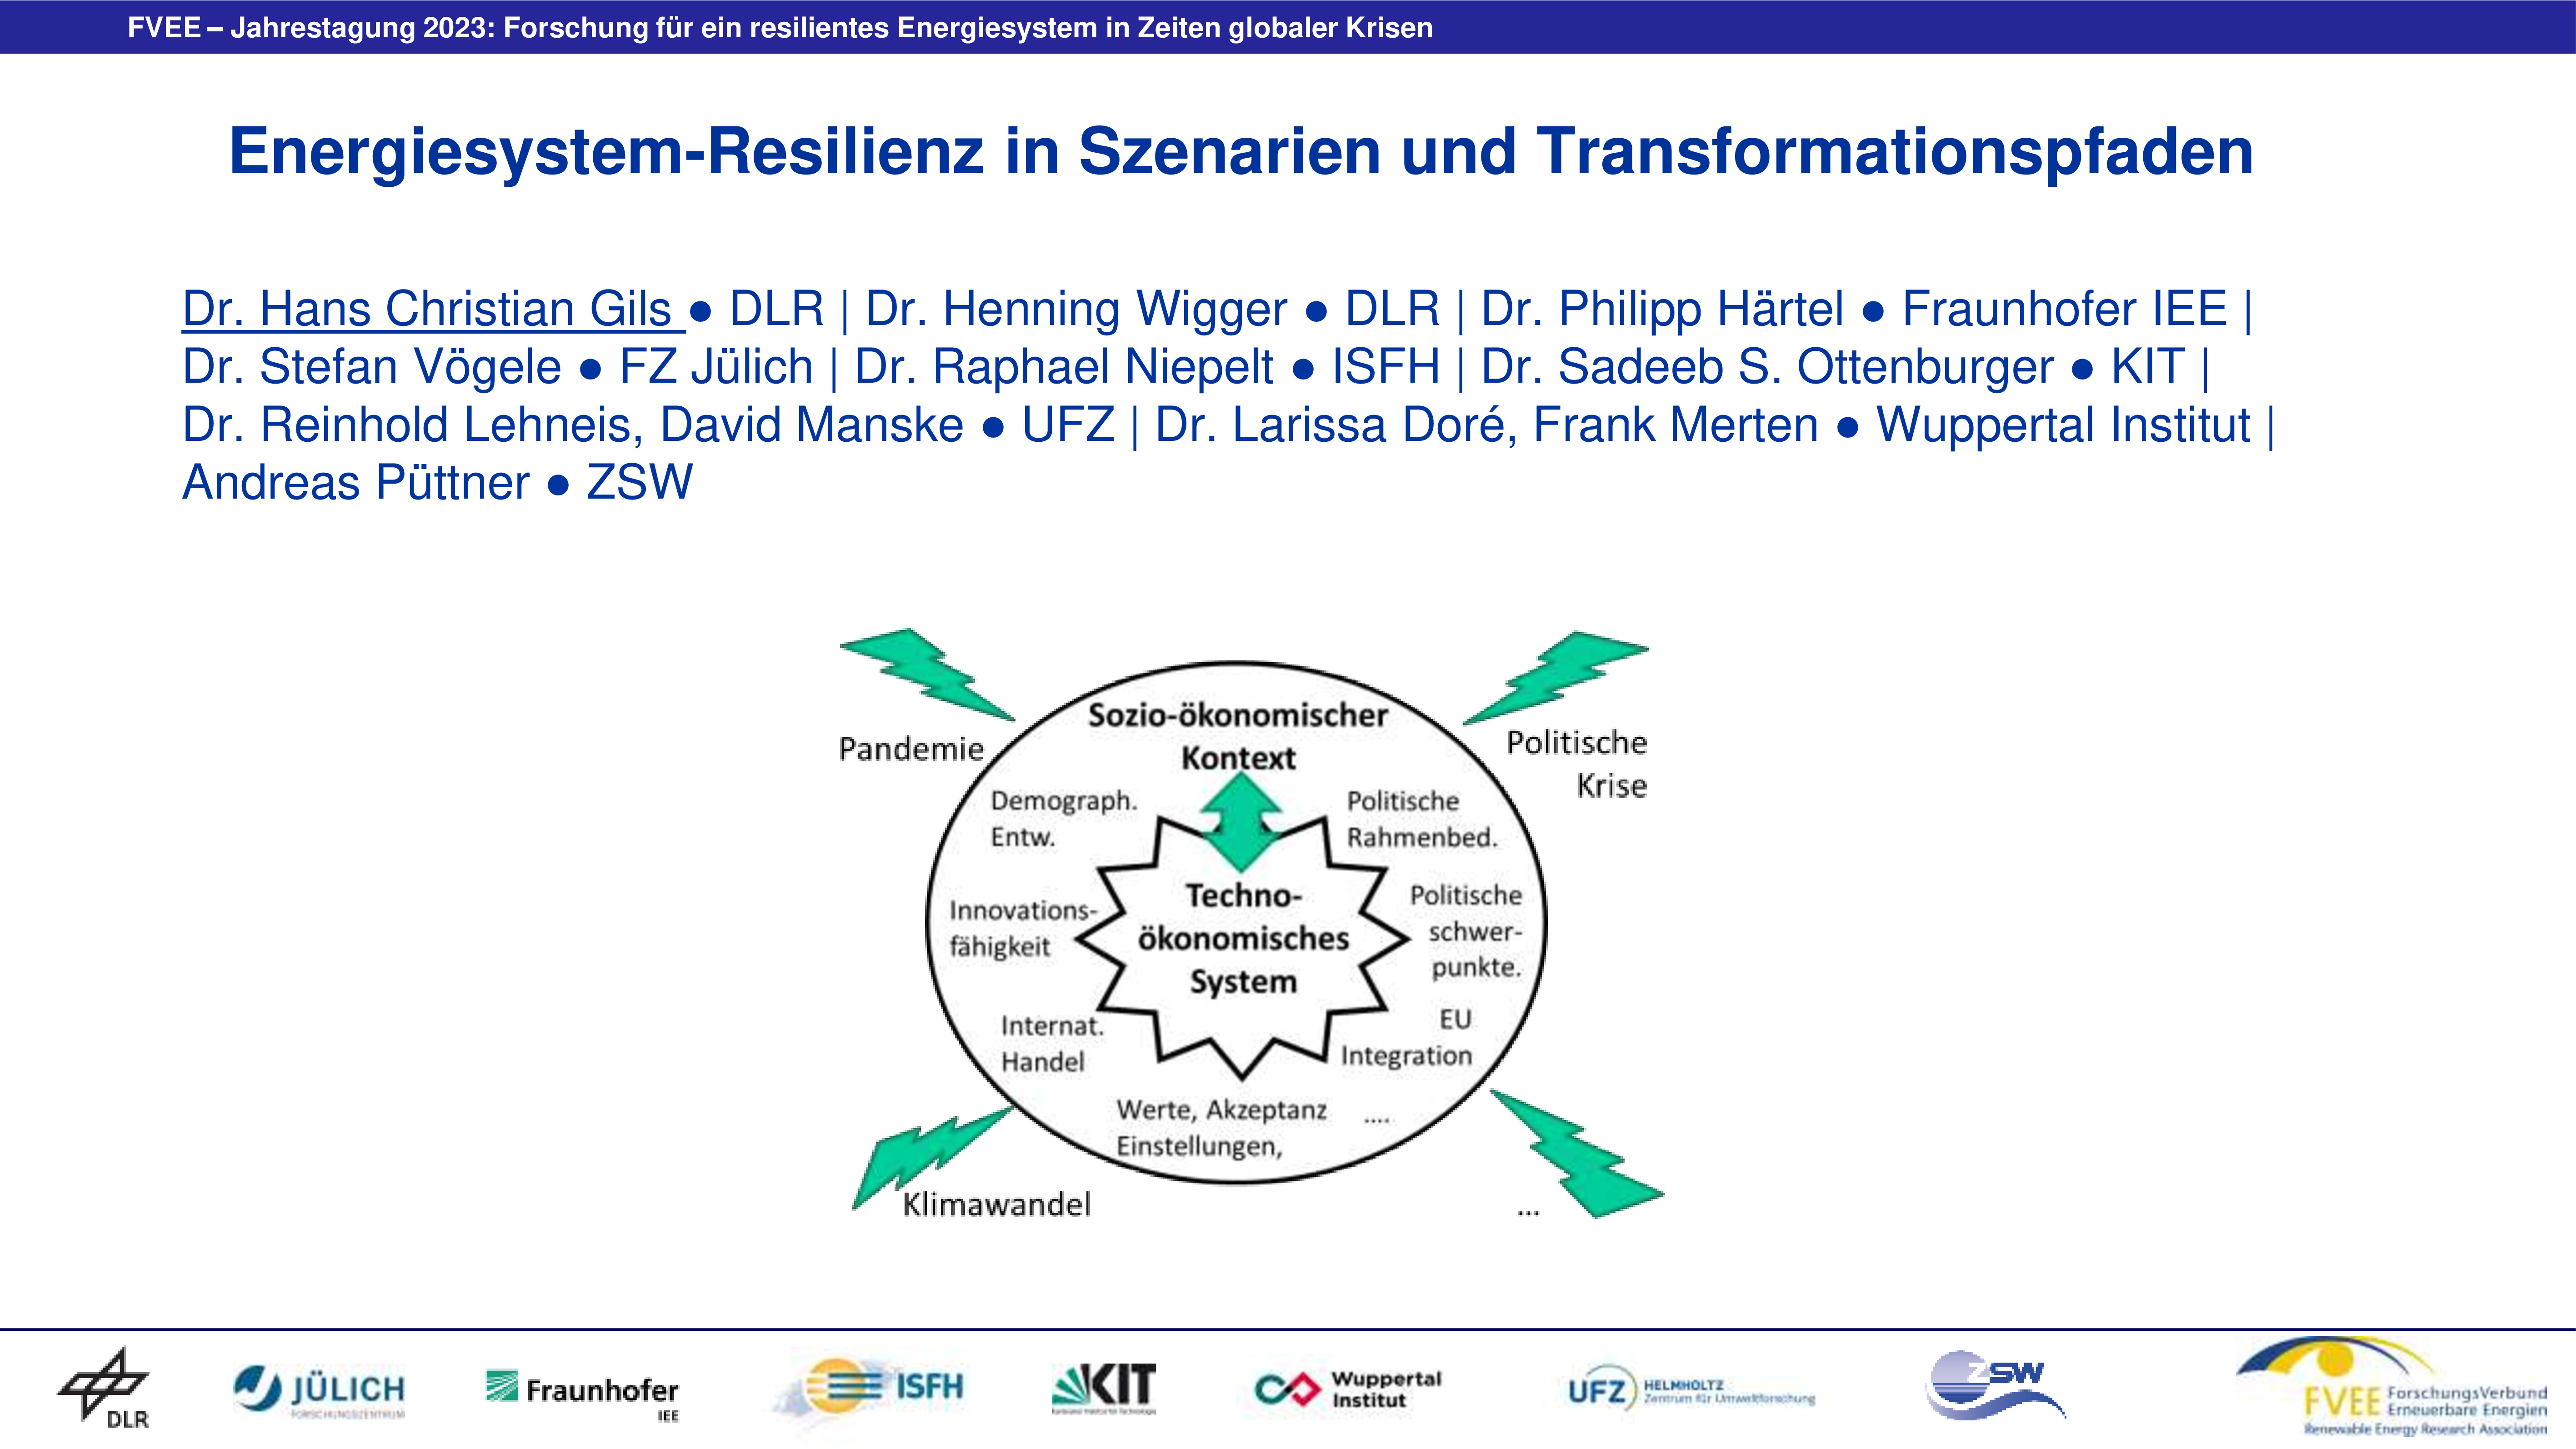 Energiesystem-Resilienz in Szenarien und Transformationspfaden (Gils - DLR)